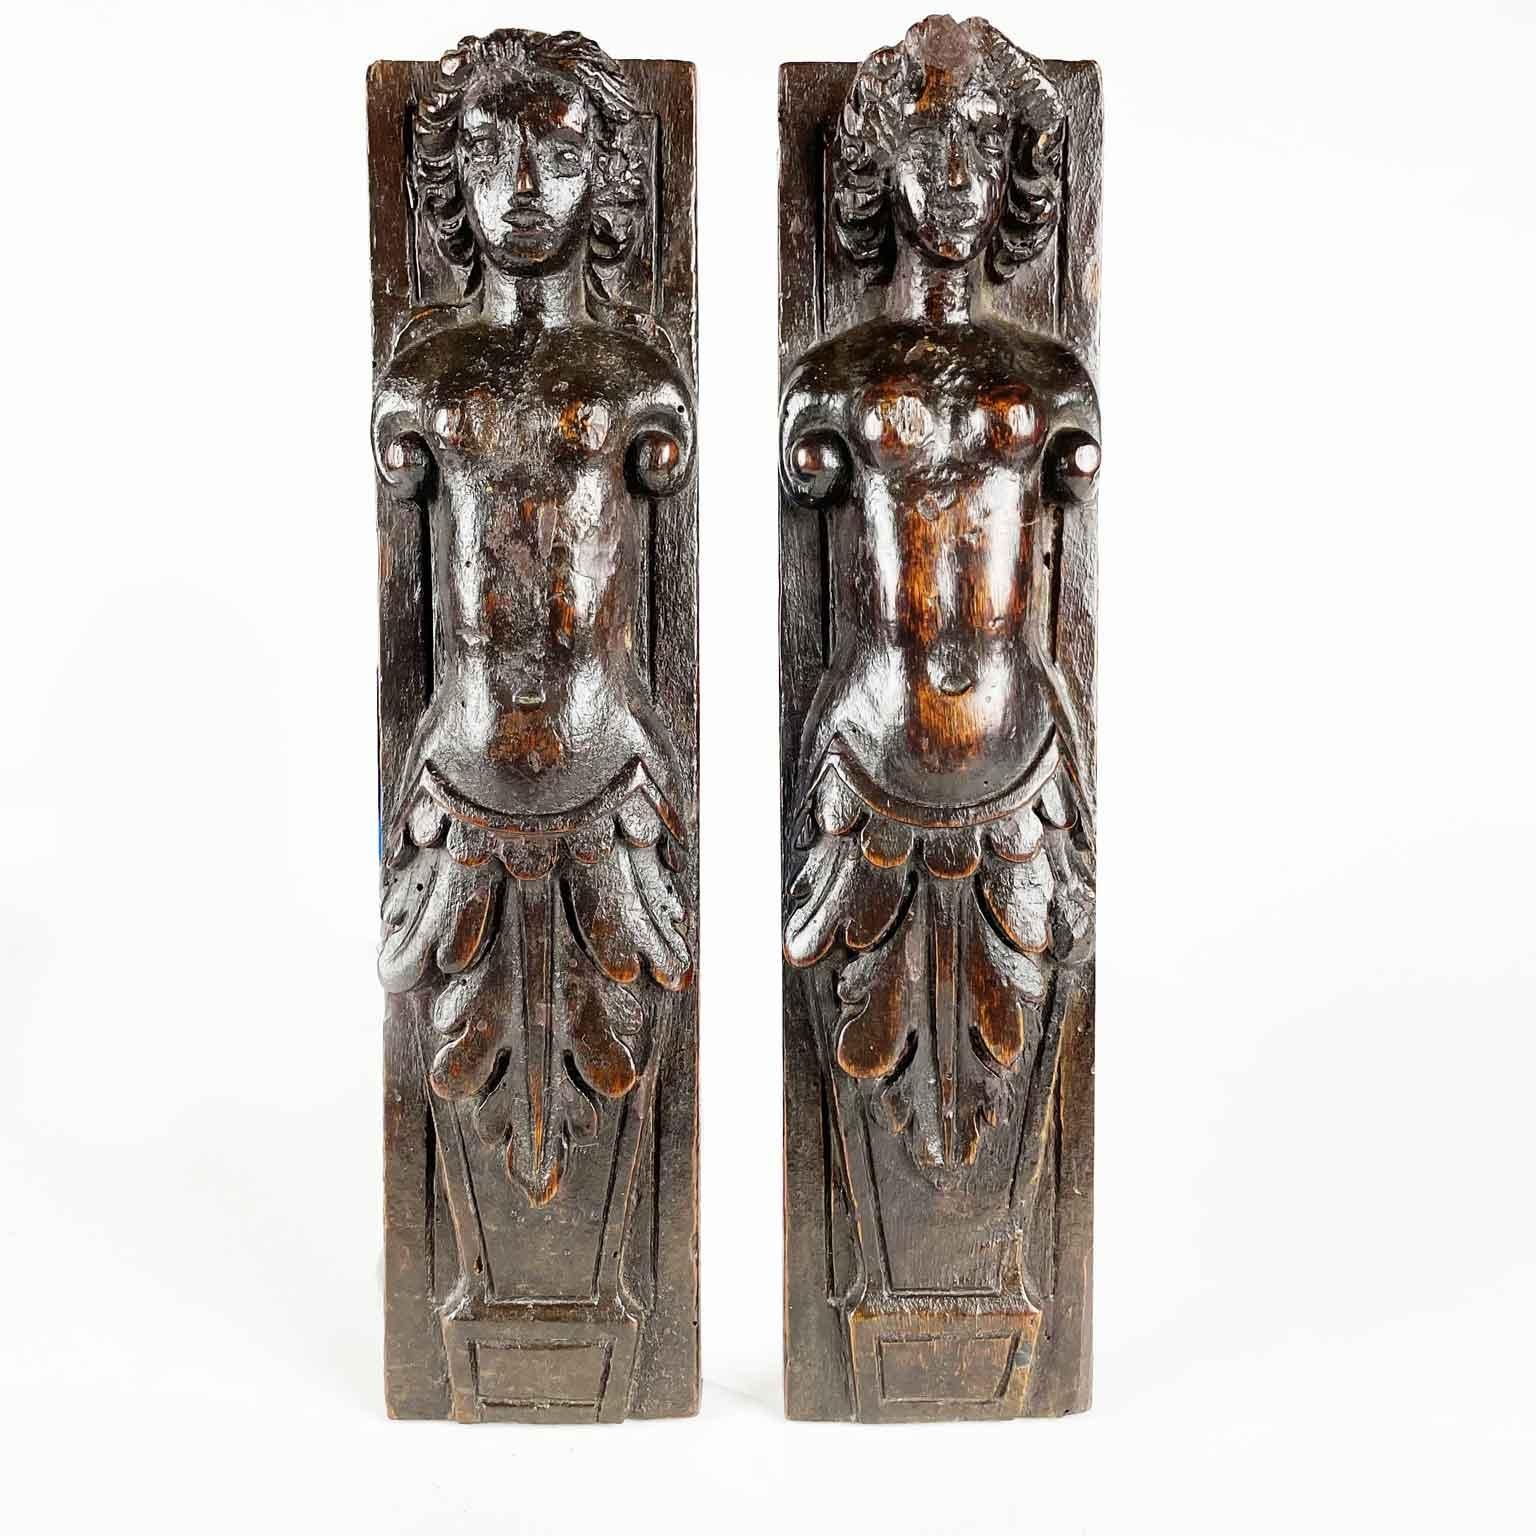 Paar geschnitzte Karyatiden aus italienischem Nussbaumholz aus dem 17. Jahrhundert, ein antikes Paar barocker, handgeschnitzter weiblicher Figuren mit einer schönen dunklen Patina. Guter altersbedingter Zustand, beide geschnitzten Tafeln zeigen